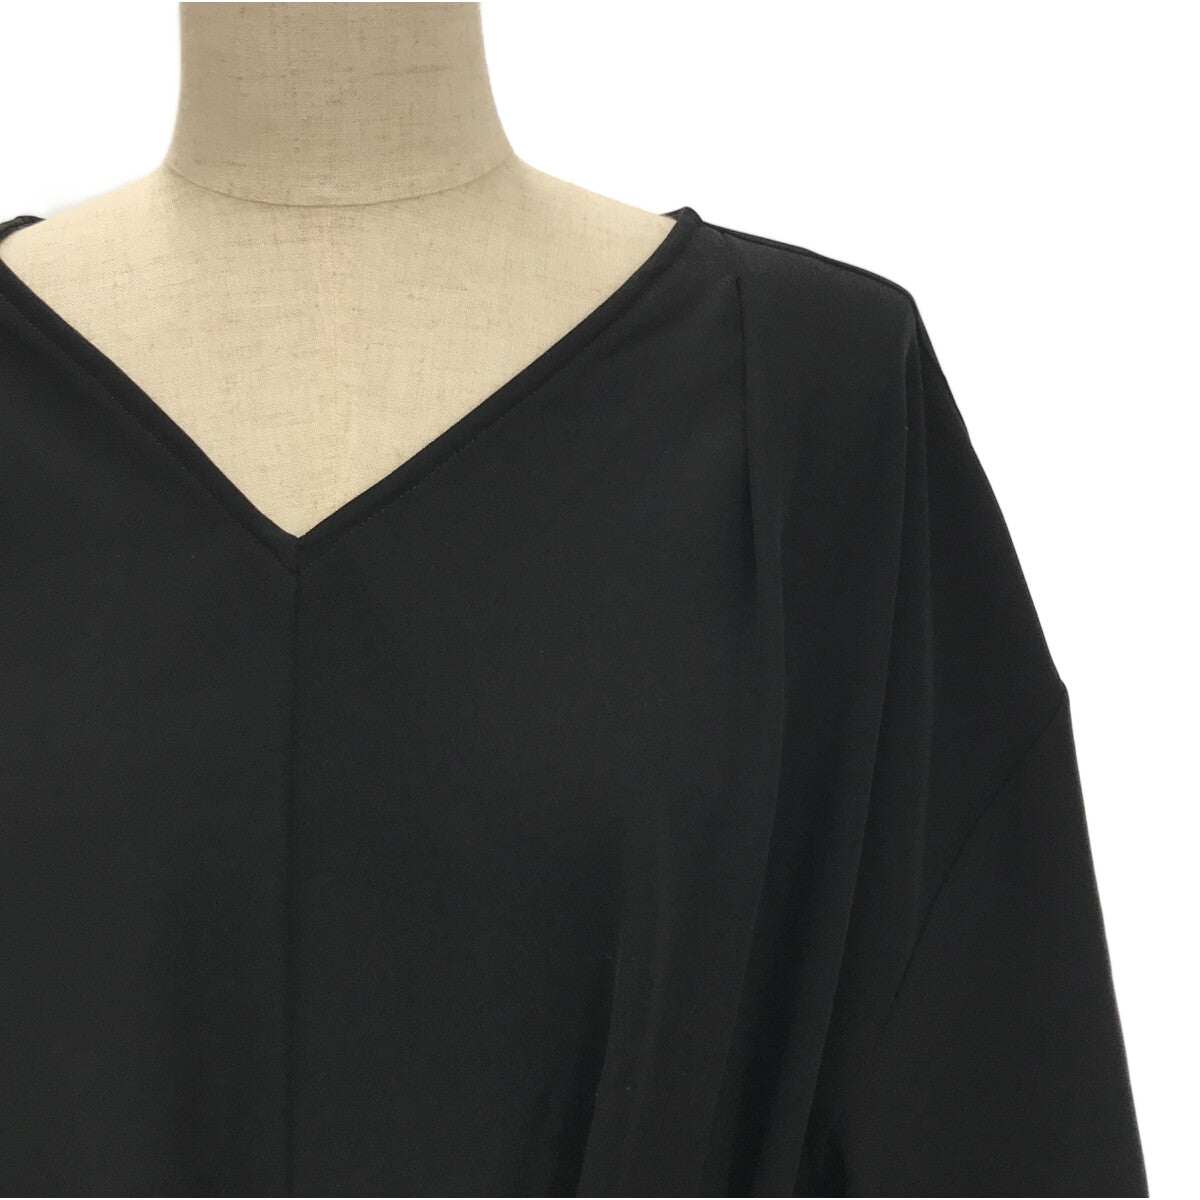 【美品】  foufou / フーフー | THE DRESS #07 drape v neck dress ワンピース | 0 | ブラック | レディース